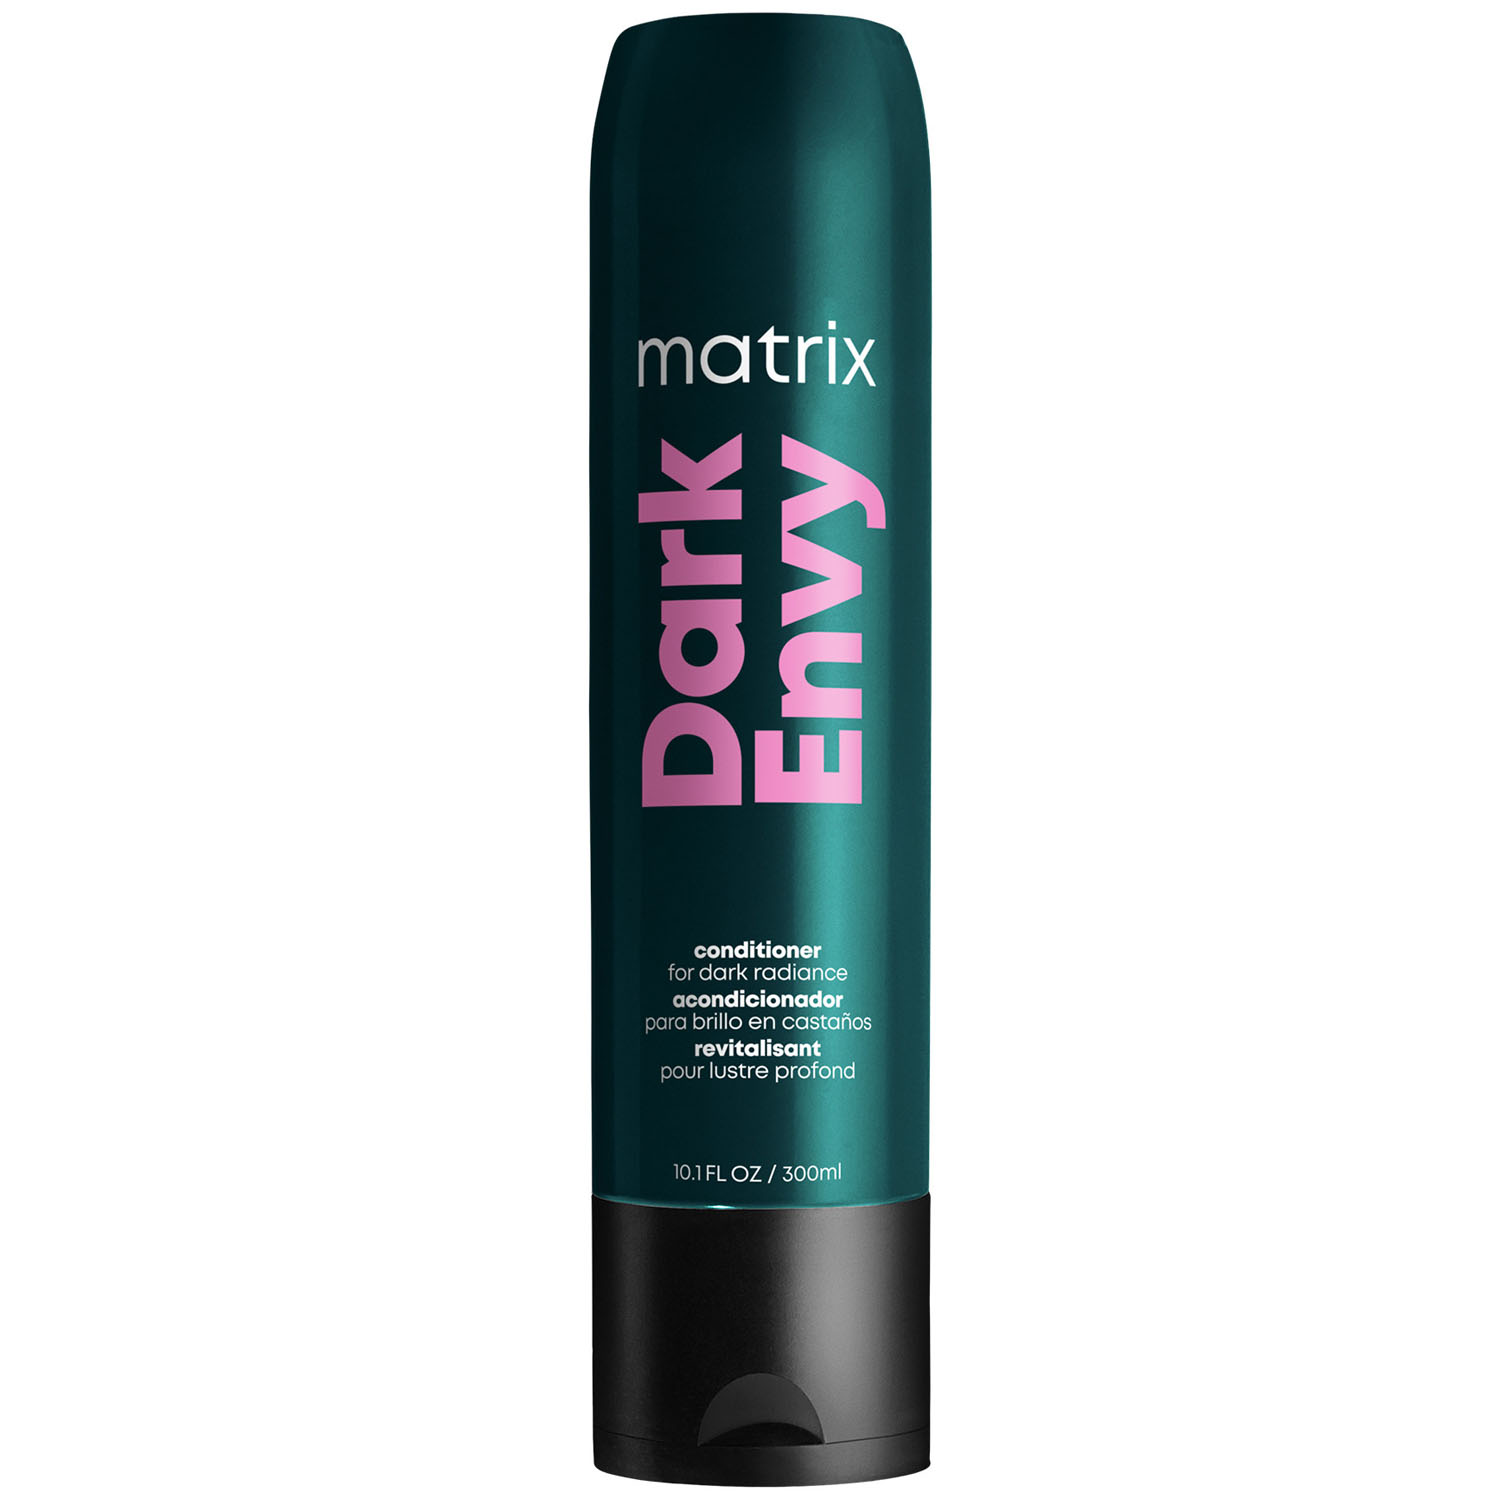 Matrix Кондиционер для глубокого питания натуральных и окрашенных темных волос, 300 мл (Matrix, Total results)